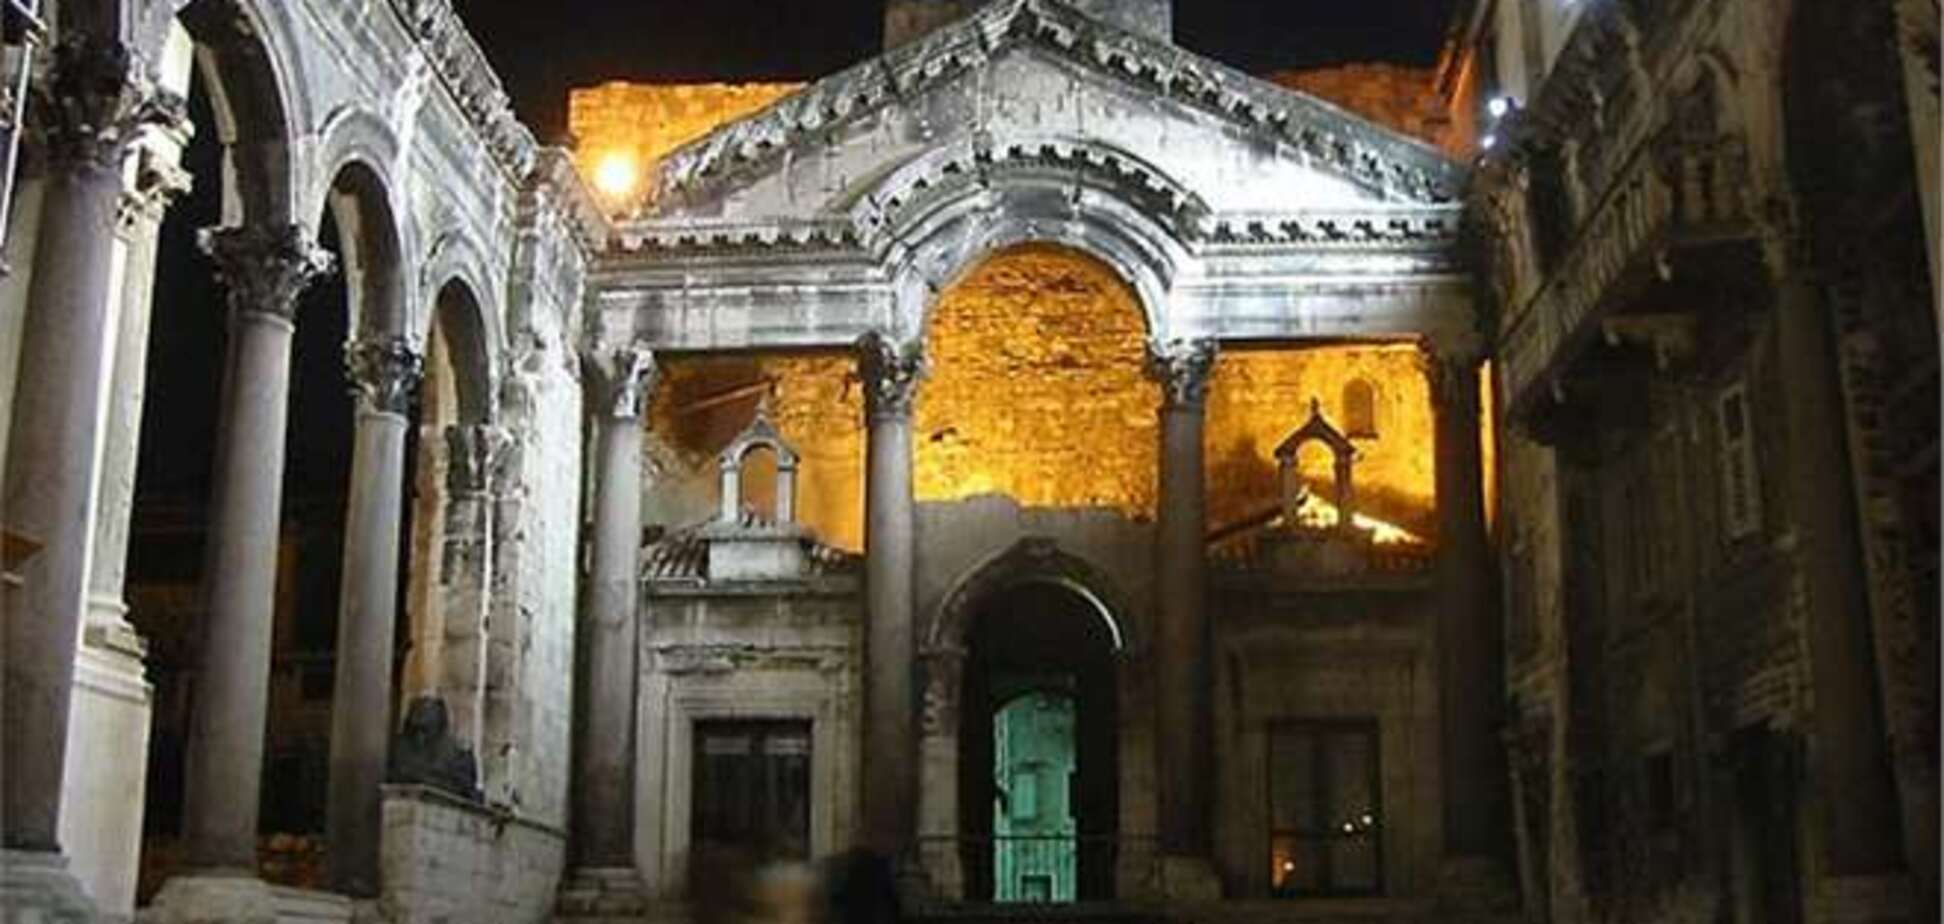 Палац римського імператора Діоклетіана в Хорватії реставрували